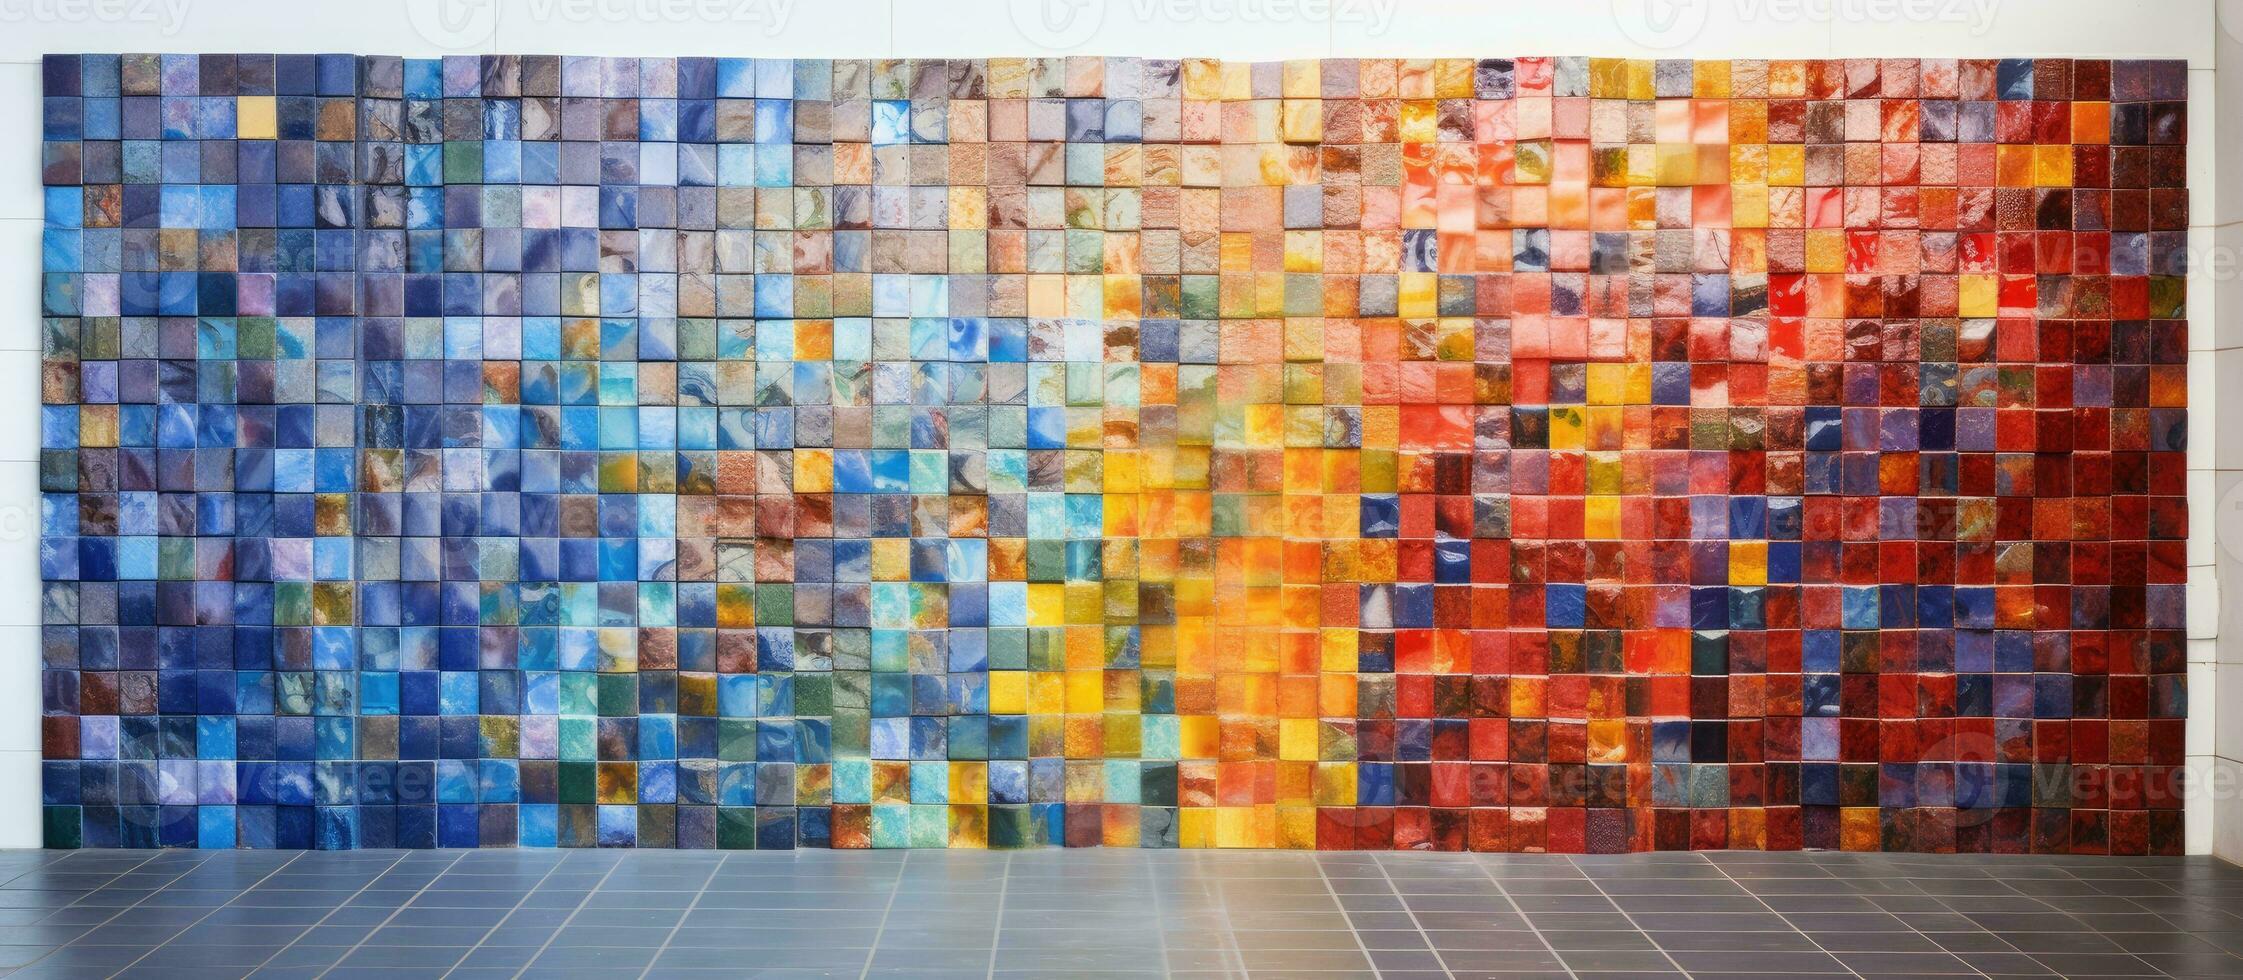 bunt Fliesen benutzt zum dekorieren Wände im ein Mosaik Muster foto